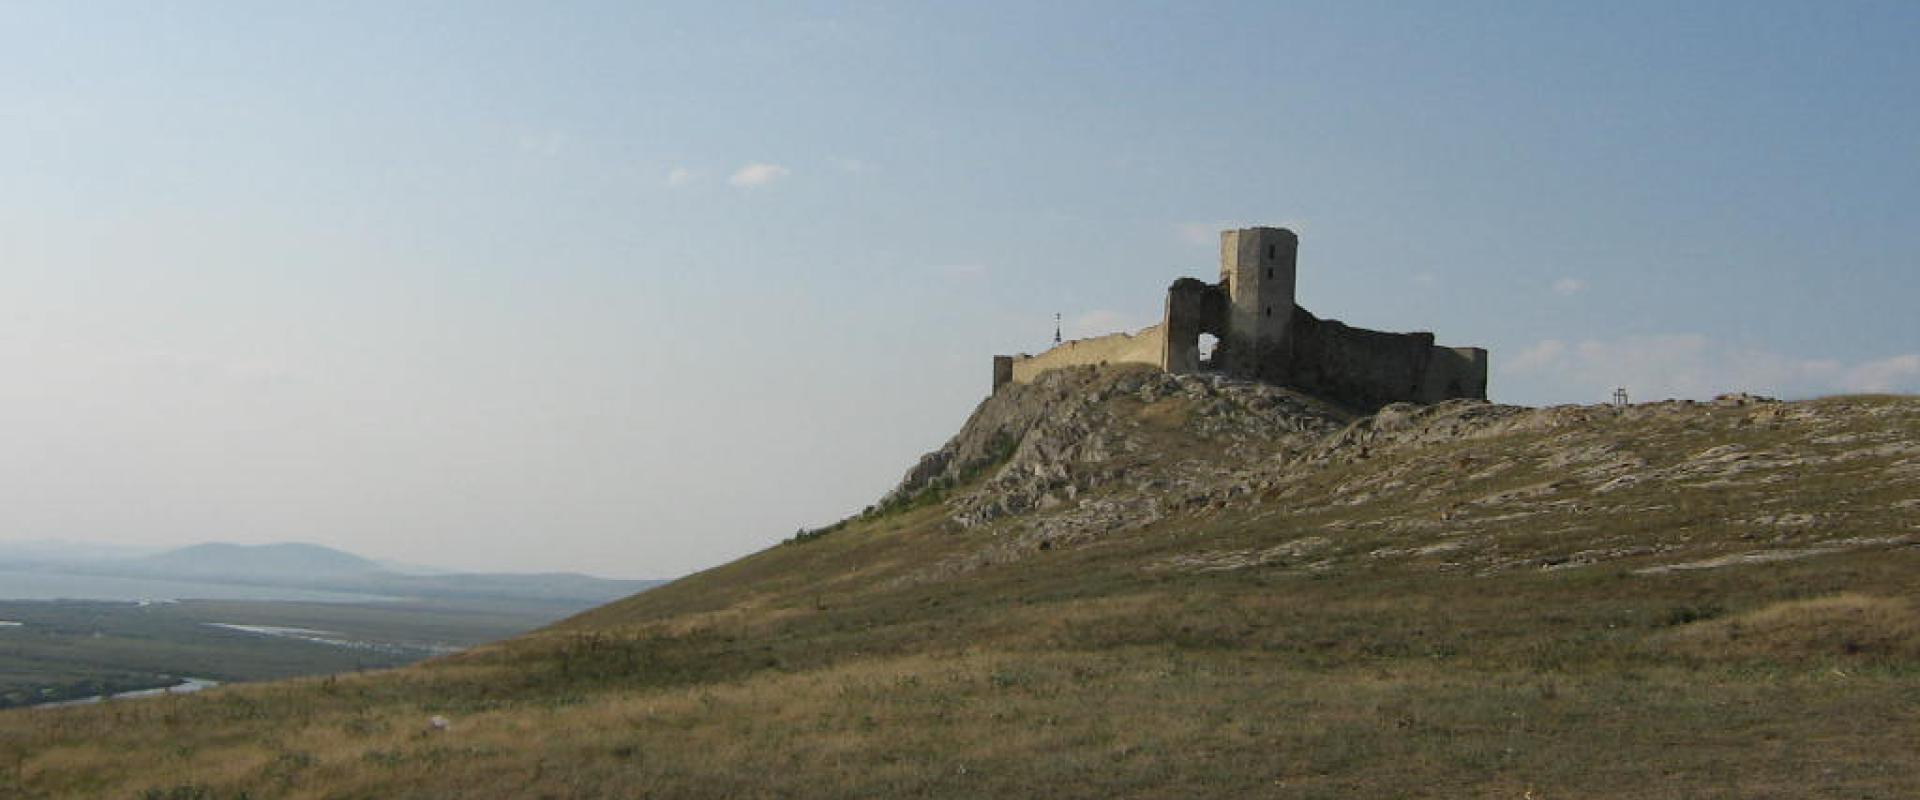 Die Enisala Burg in Rumänien, gelegen auf einem Hügel mit karger Vegetation unter klaren Himmel